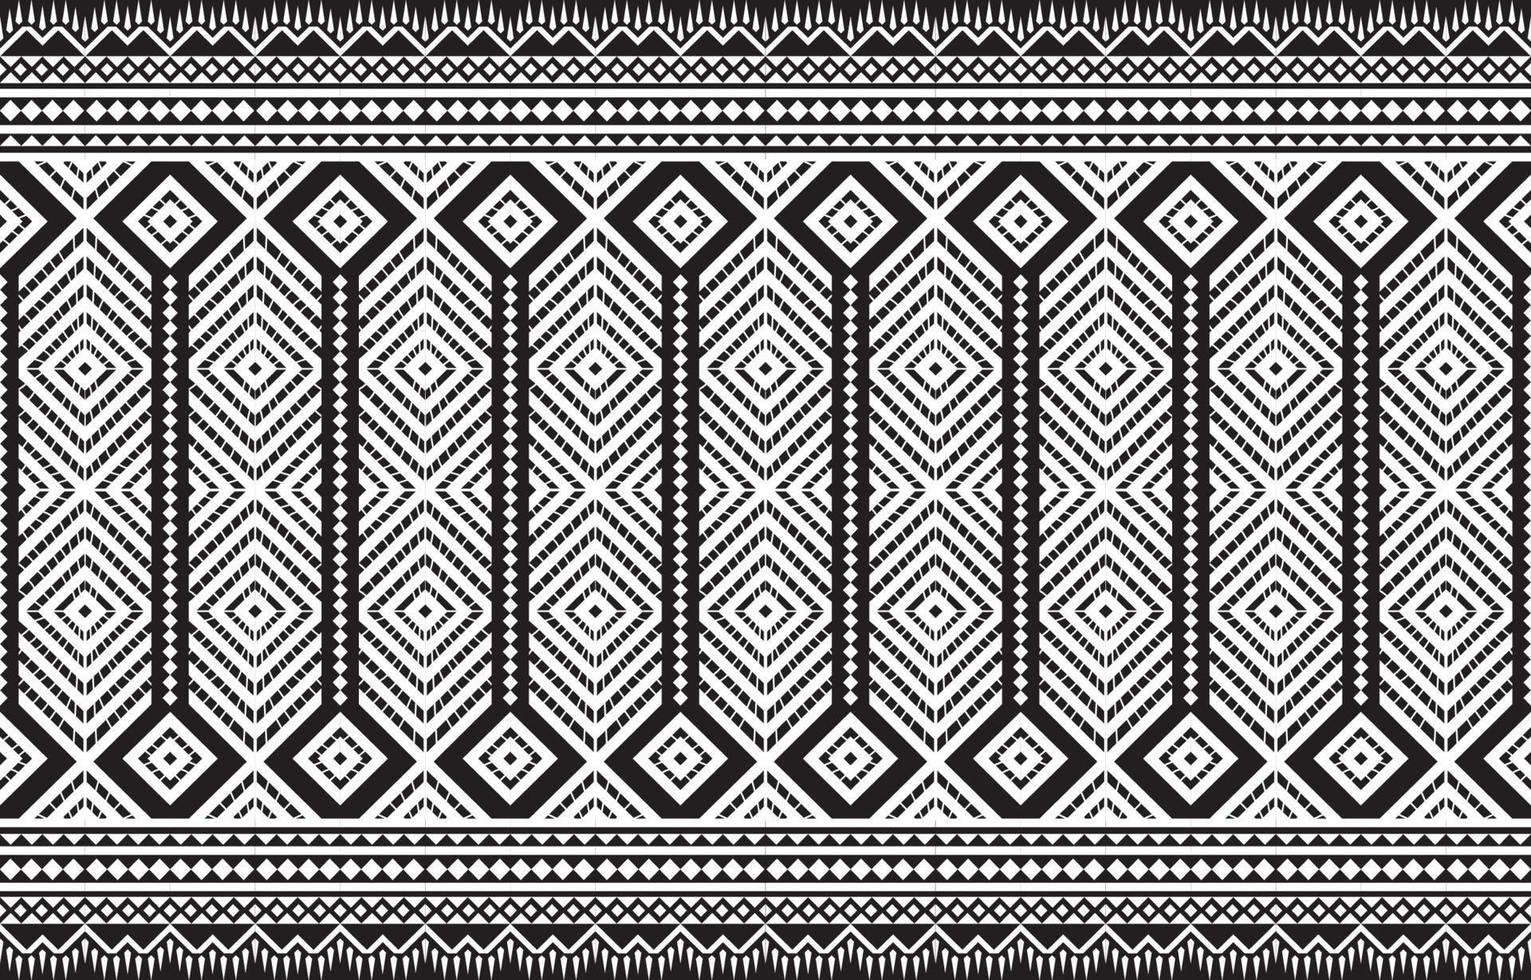 geometrisches ethnisches orientalisches nahtloses muster traditionelles design für hintergrund, teppich, tapete, kleidung, verpackung, batik, stoff, illustration. vektor